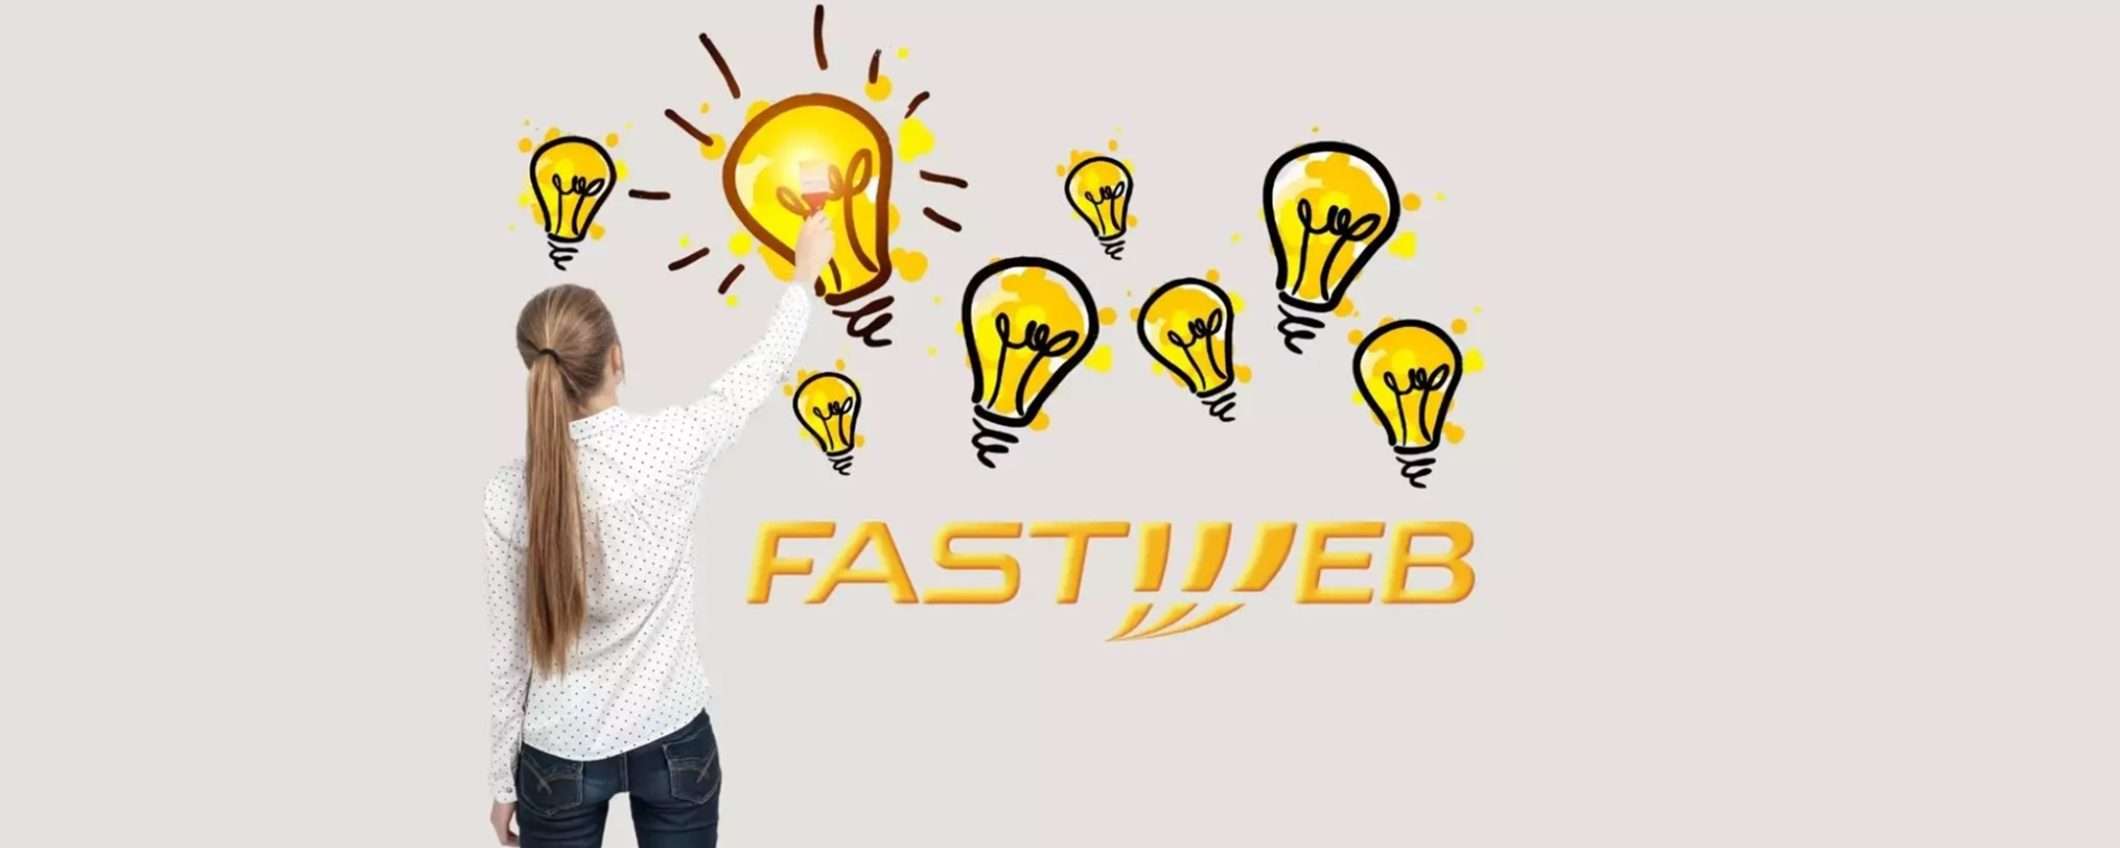 Fastweb entra nel mercato dell'energia con un'offerta fissa per 5 anni